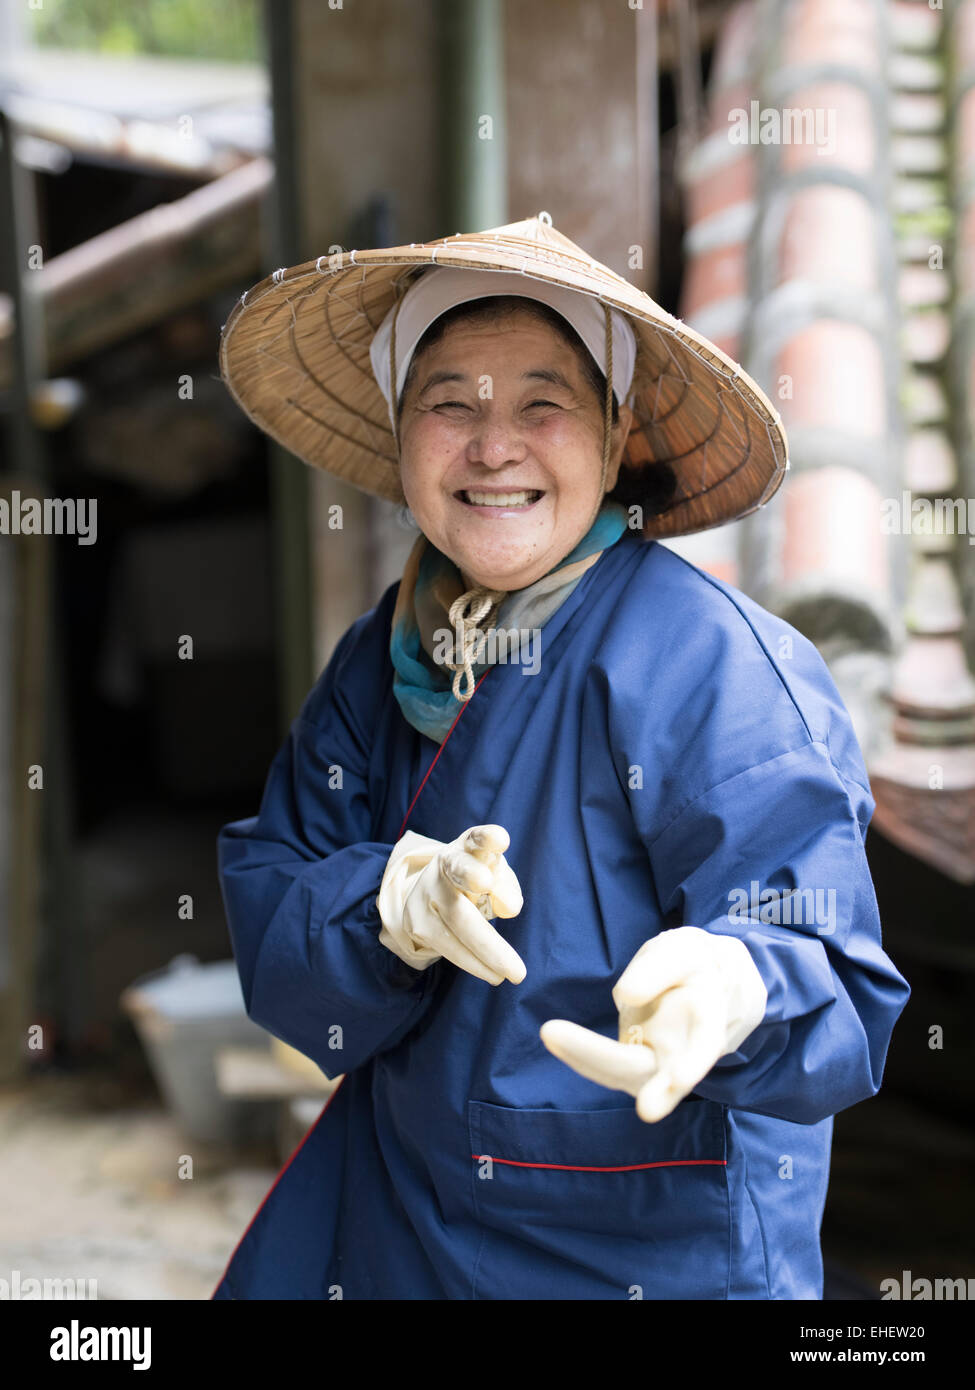 Personnes âgées femme Okinawan / farmer vêtu du costume traditionnel chapeau conique, Ginowan, Okinawa Banque D'Images